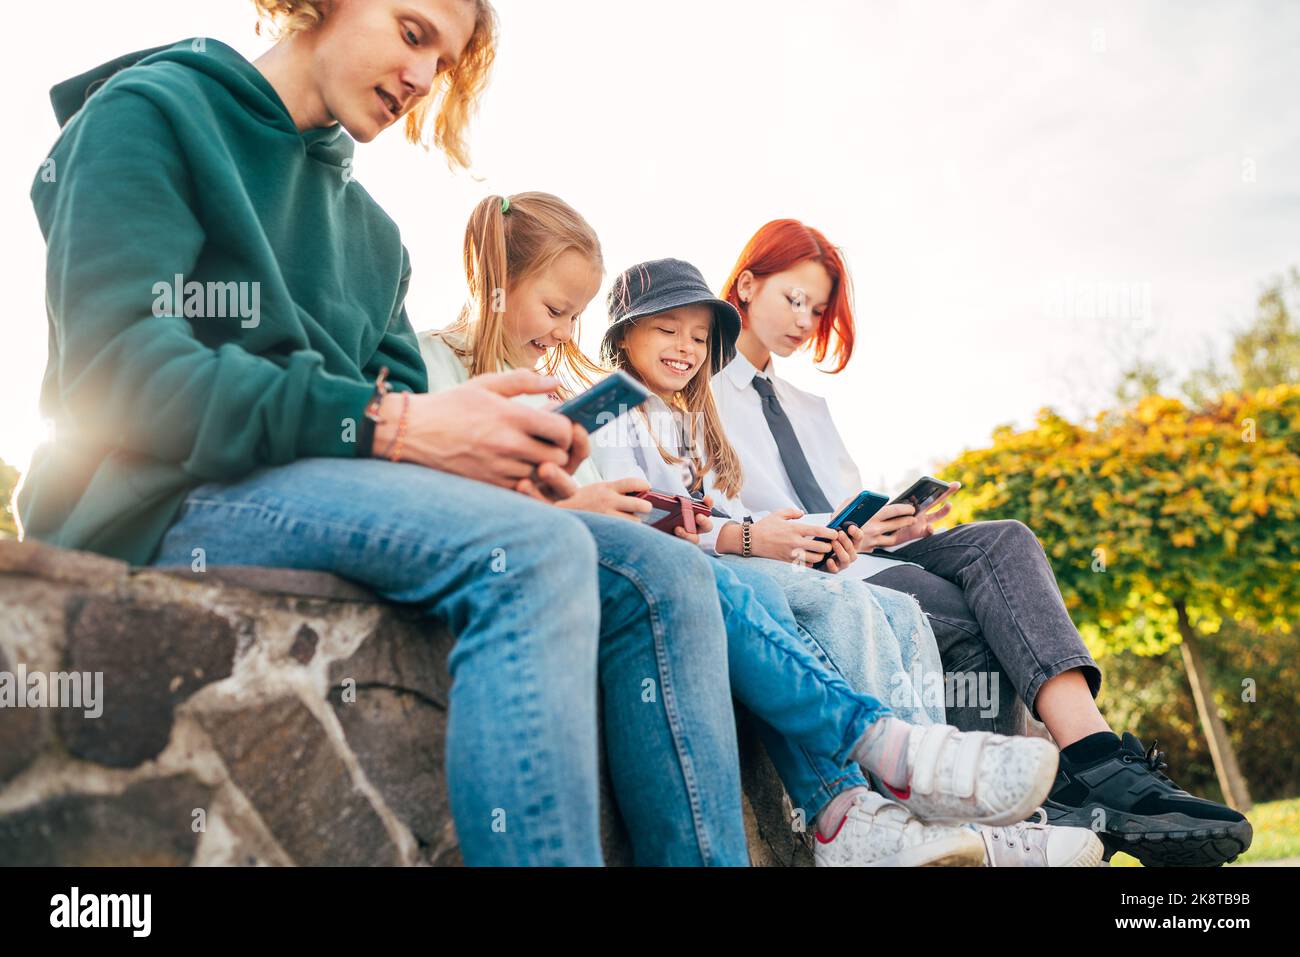 Un adolescent et une fille sœur enfants assis et parcourant leur smartphone. Un jeune temps insouciant et une image de concept de technologie moderne Banque D'Images